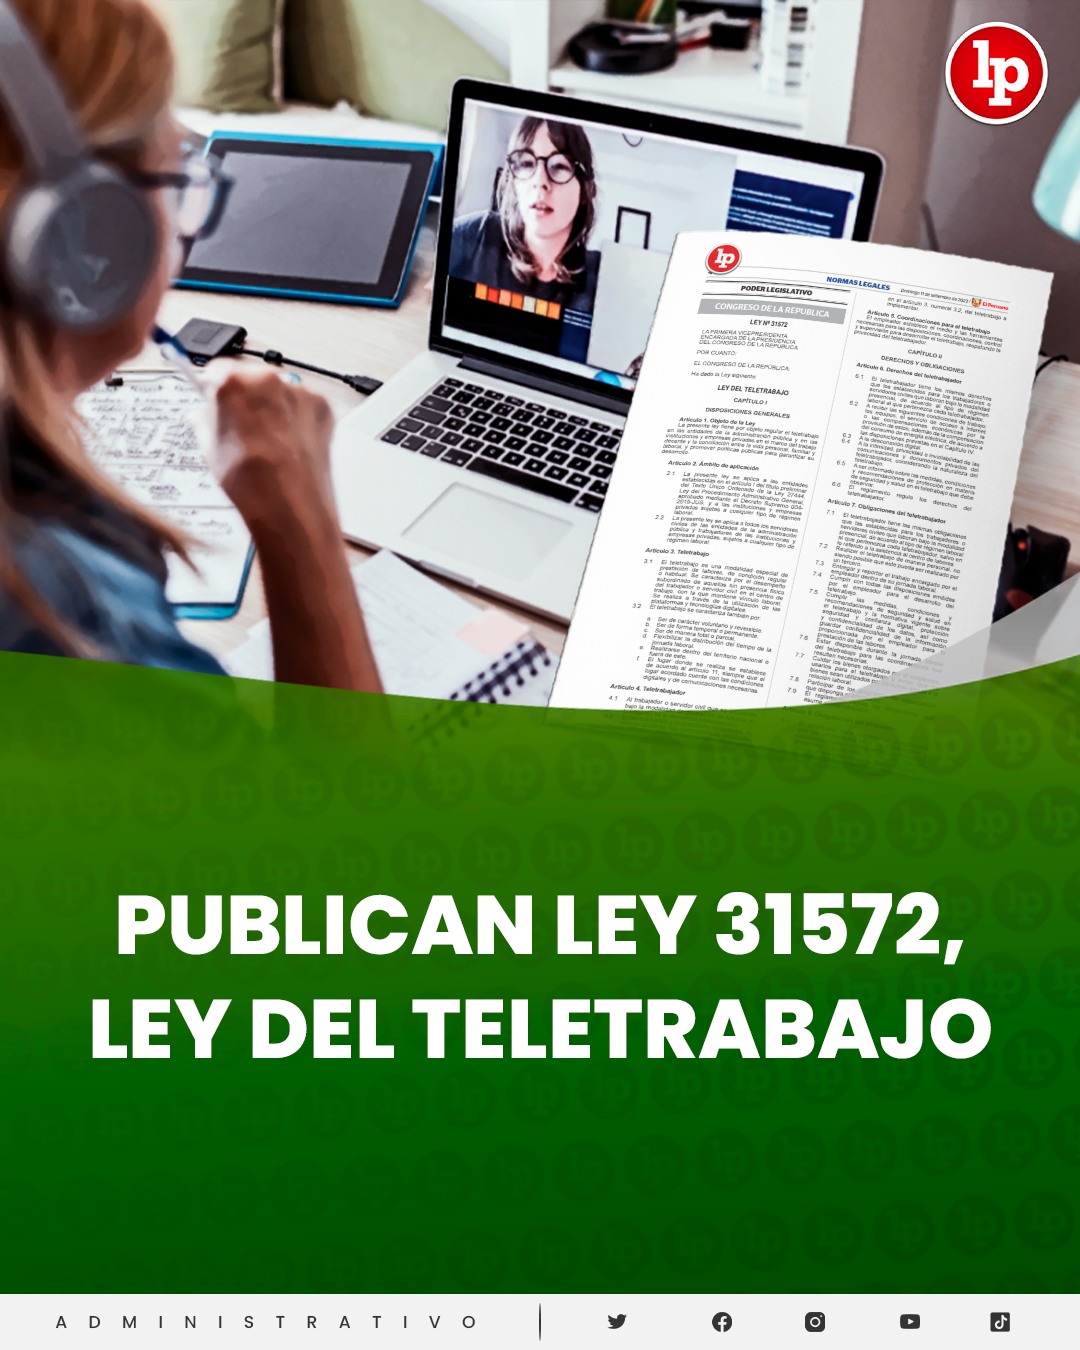 PUBLICAN LEY DEL TELETRABAJO LEY N°31572